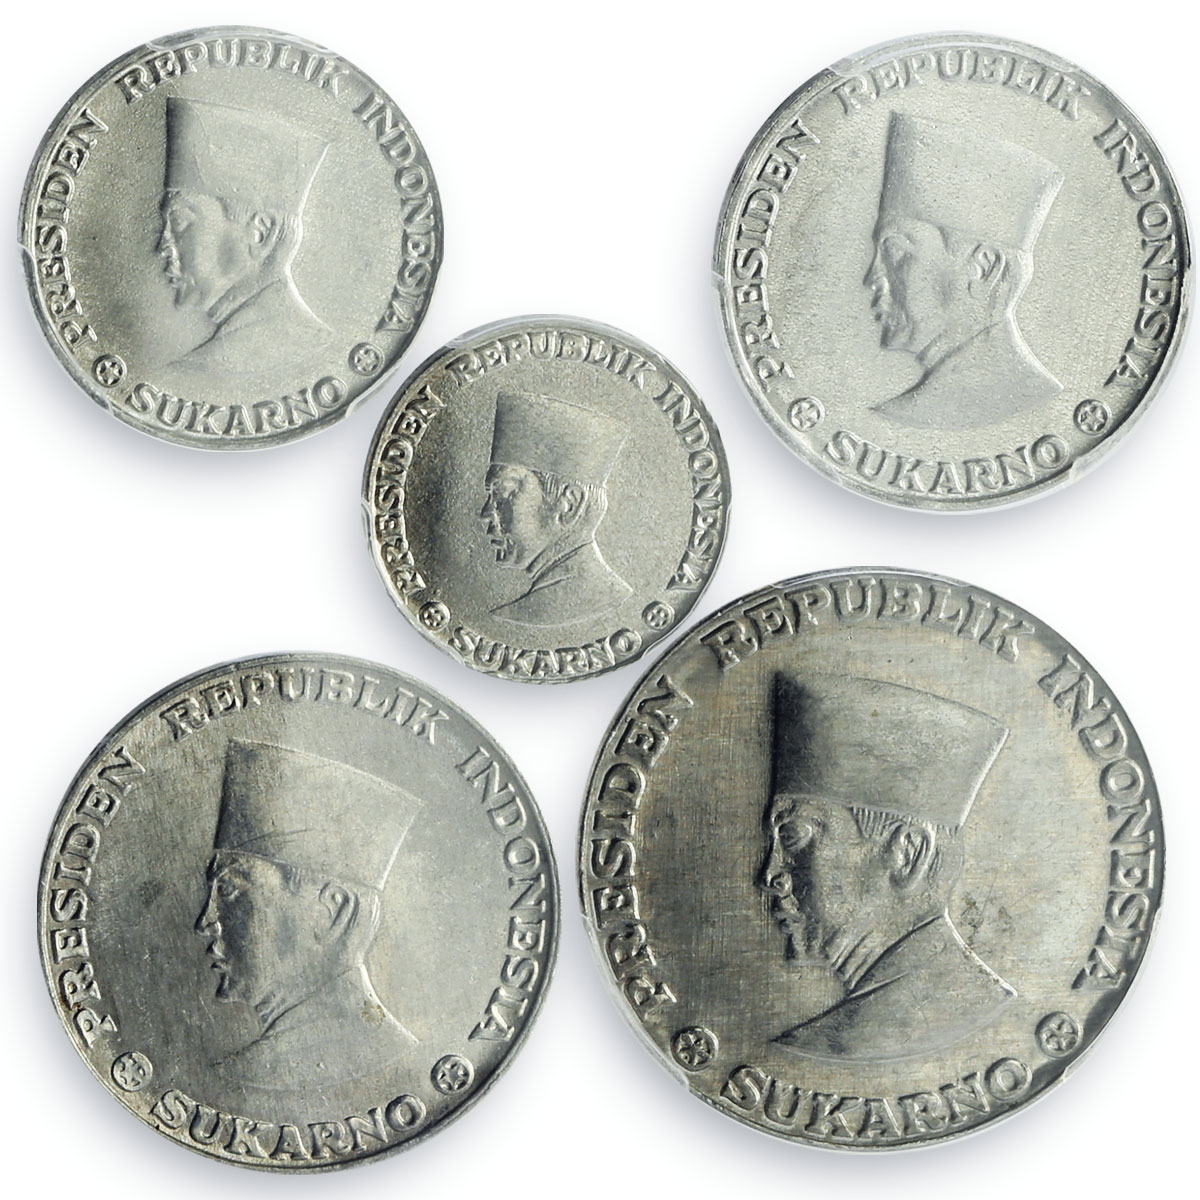 Indonesia Riau Archipelago set of 5 coins Sukarno MS63 - MS64 PCGS Al coins 1962